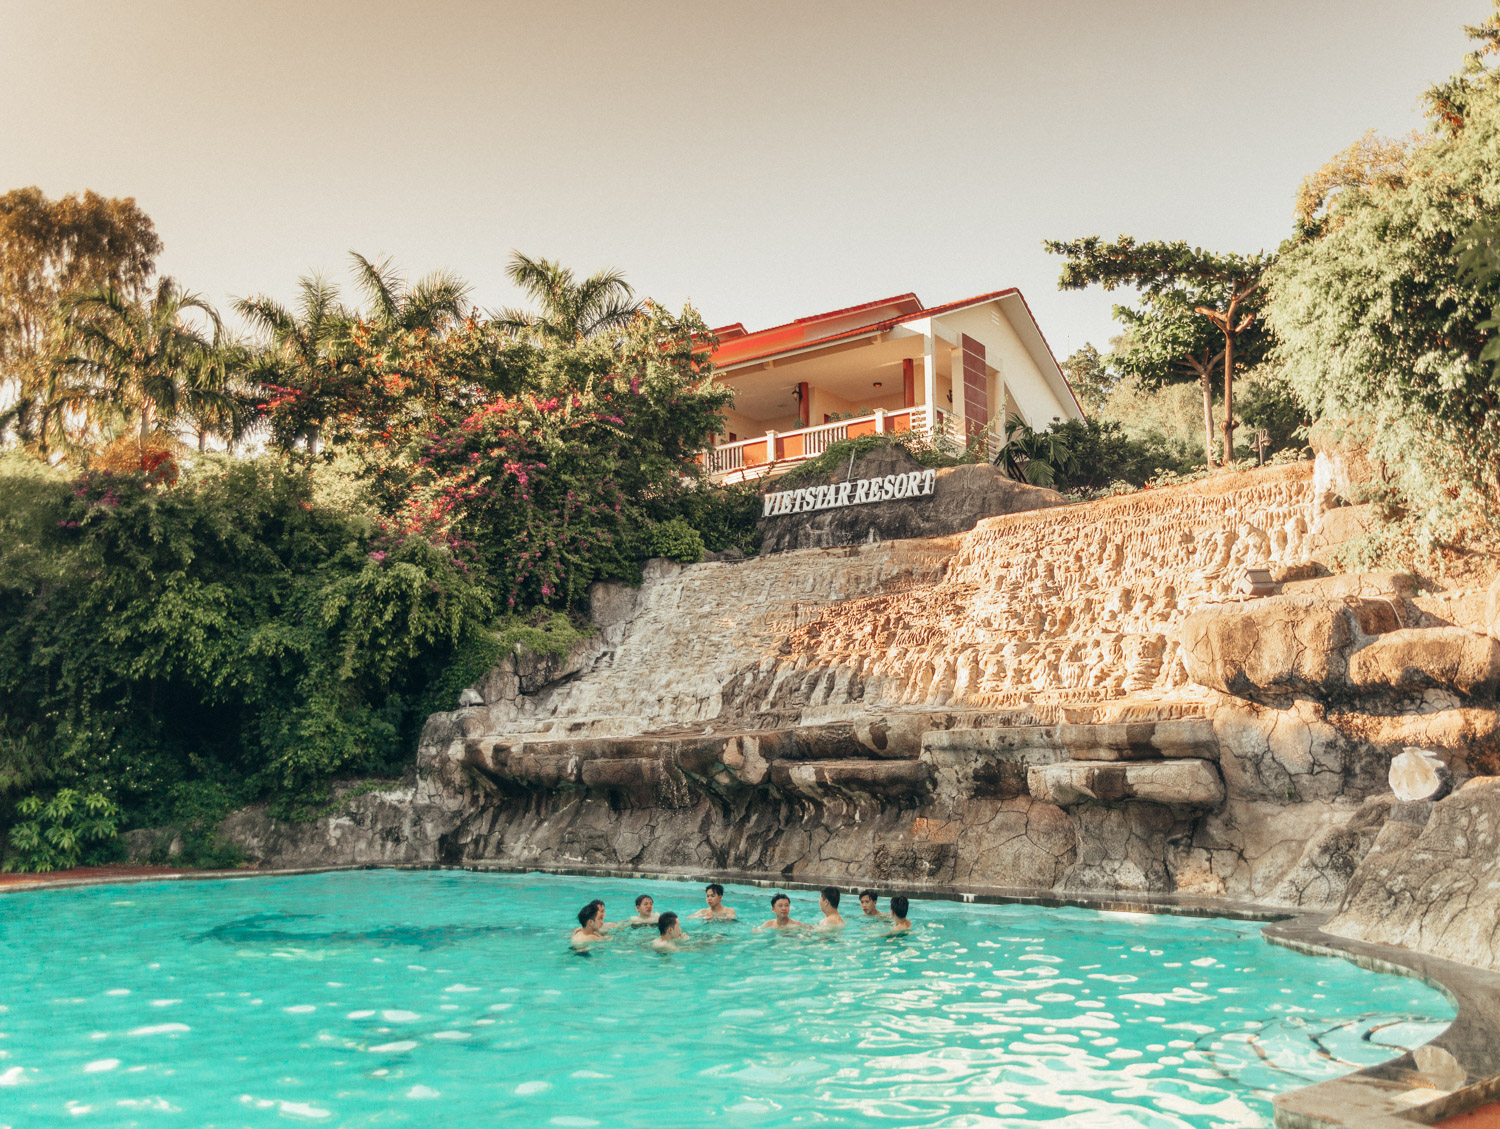 Pool at Vietstar Resort & Spa, Phu Yen